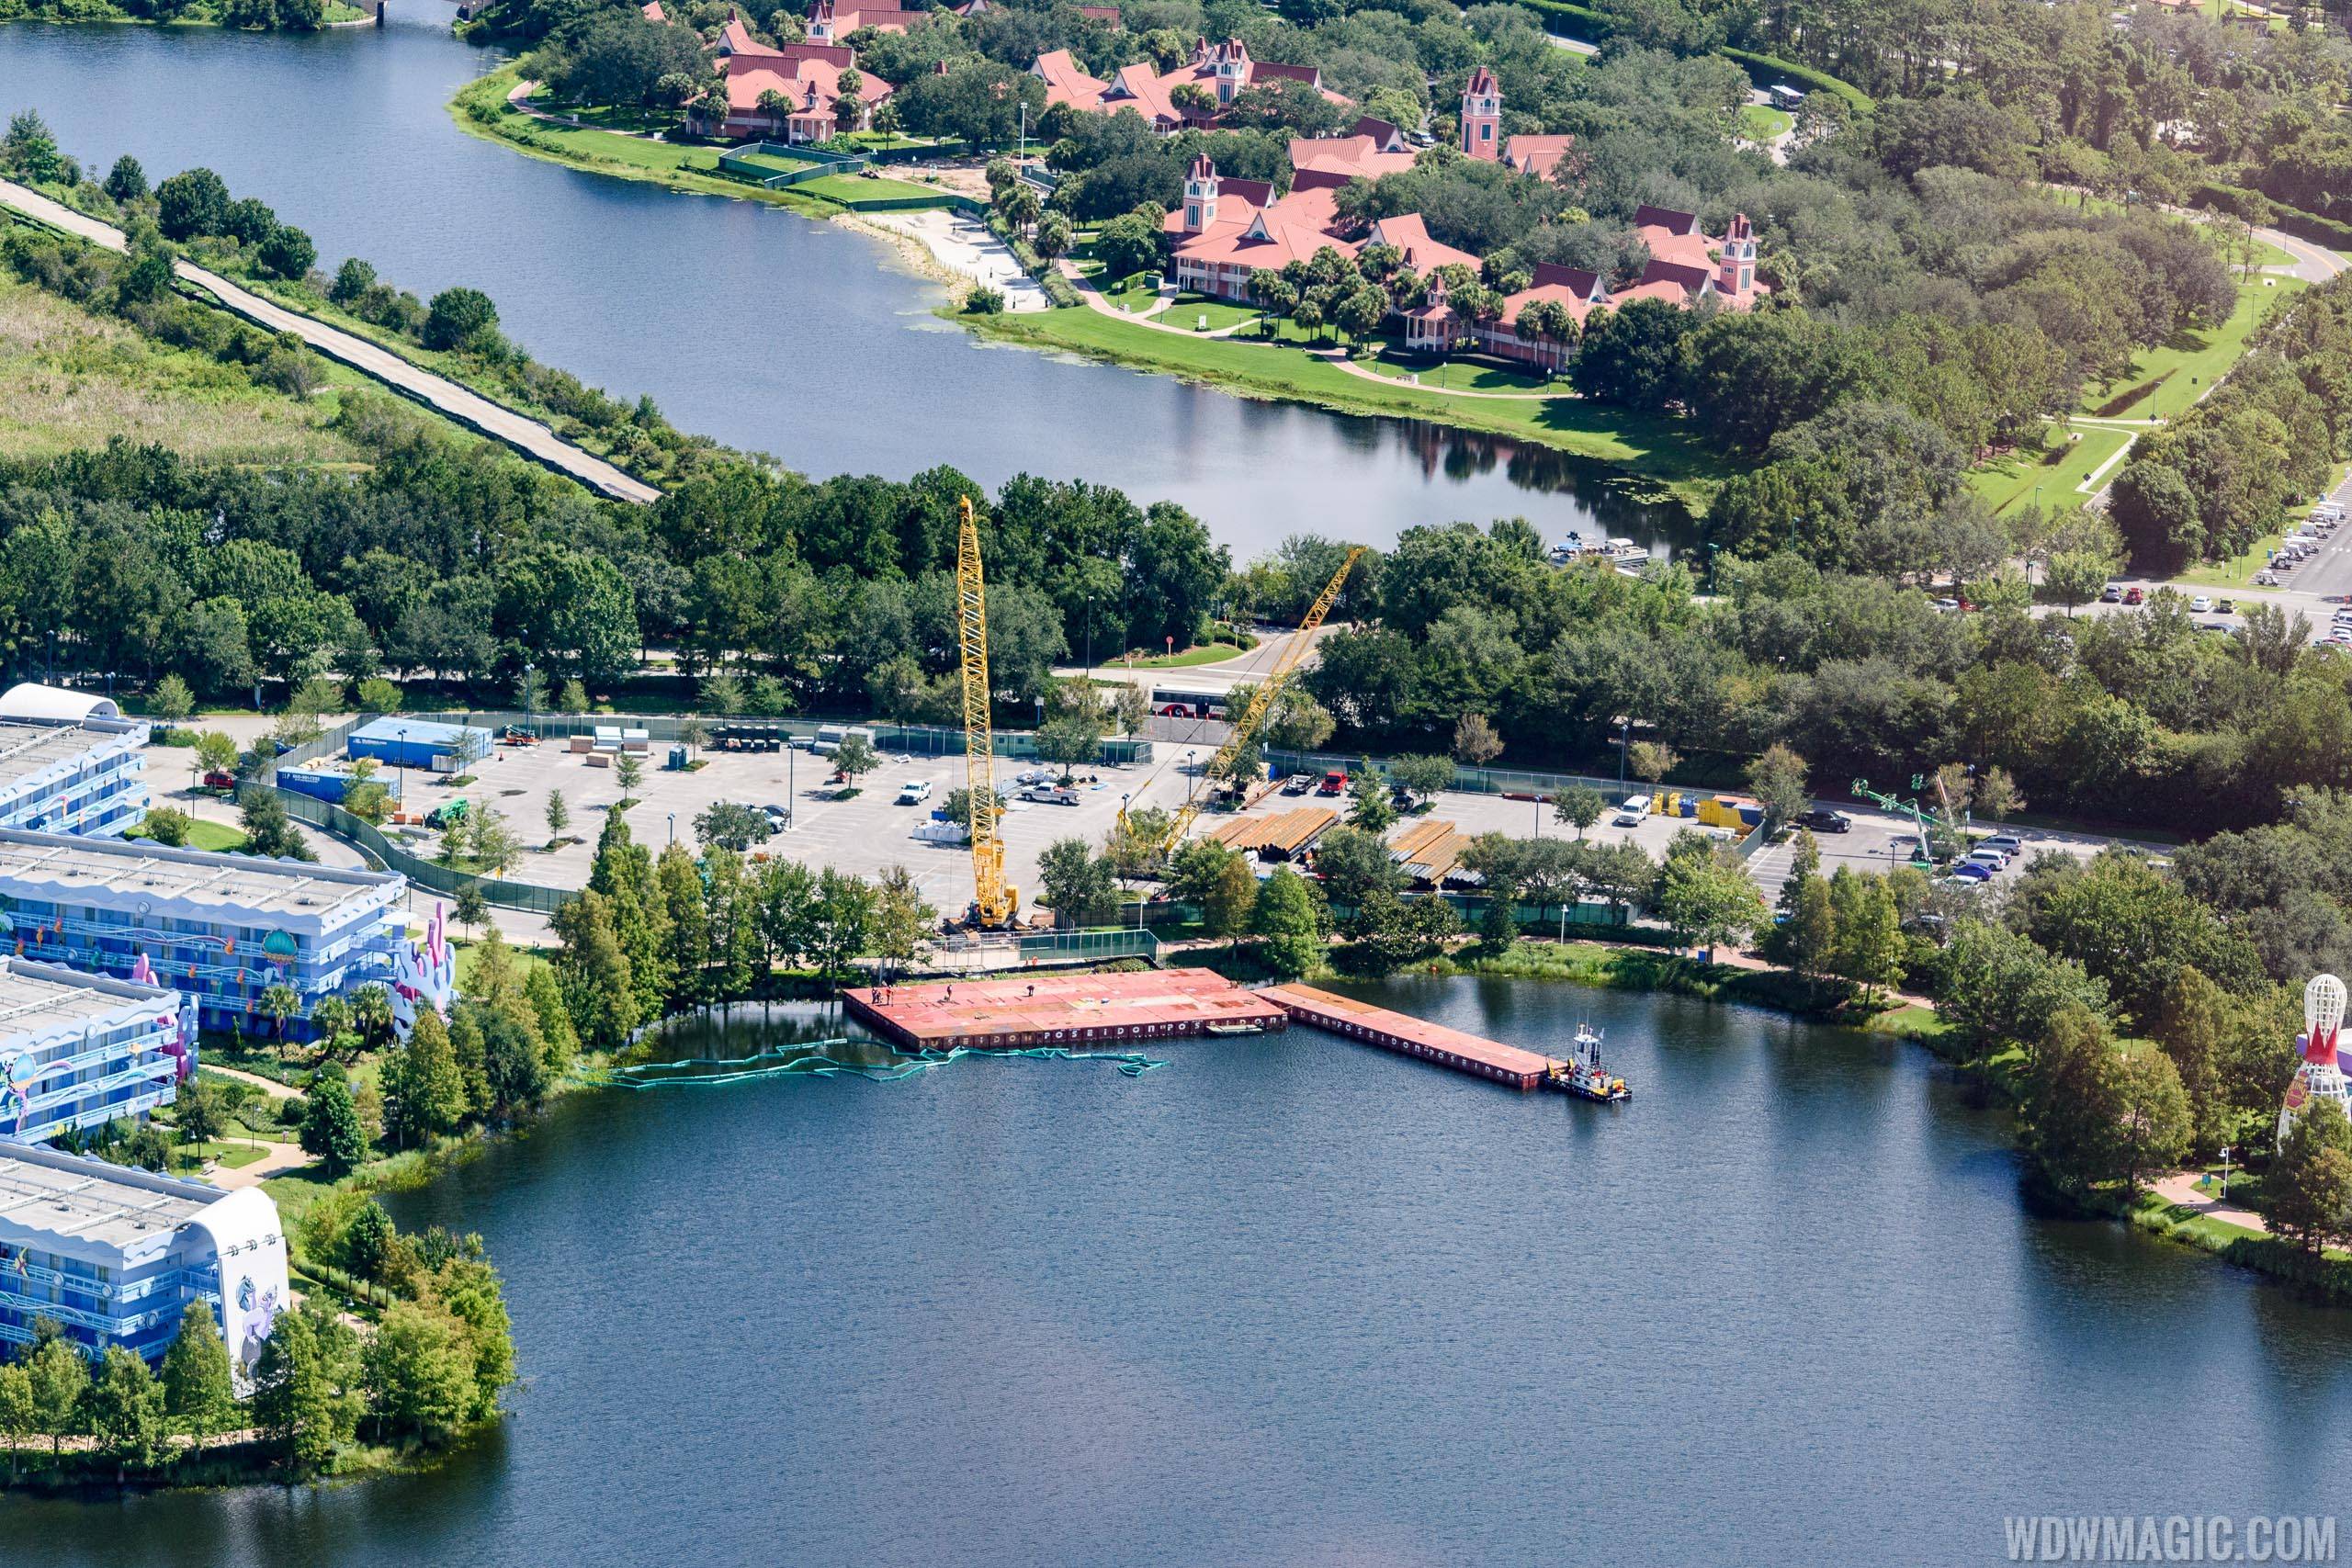 Disney Skyliner construction at Pop Century Resort